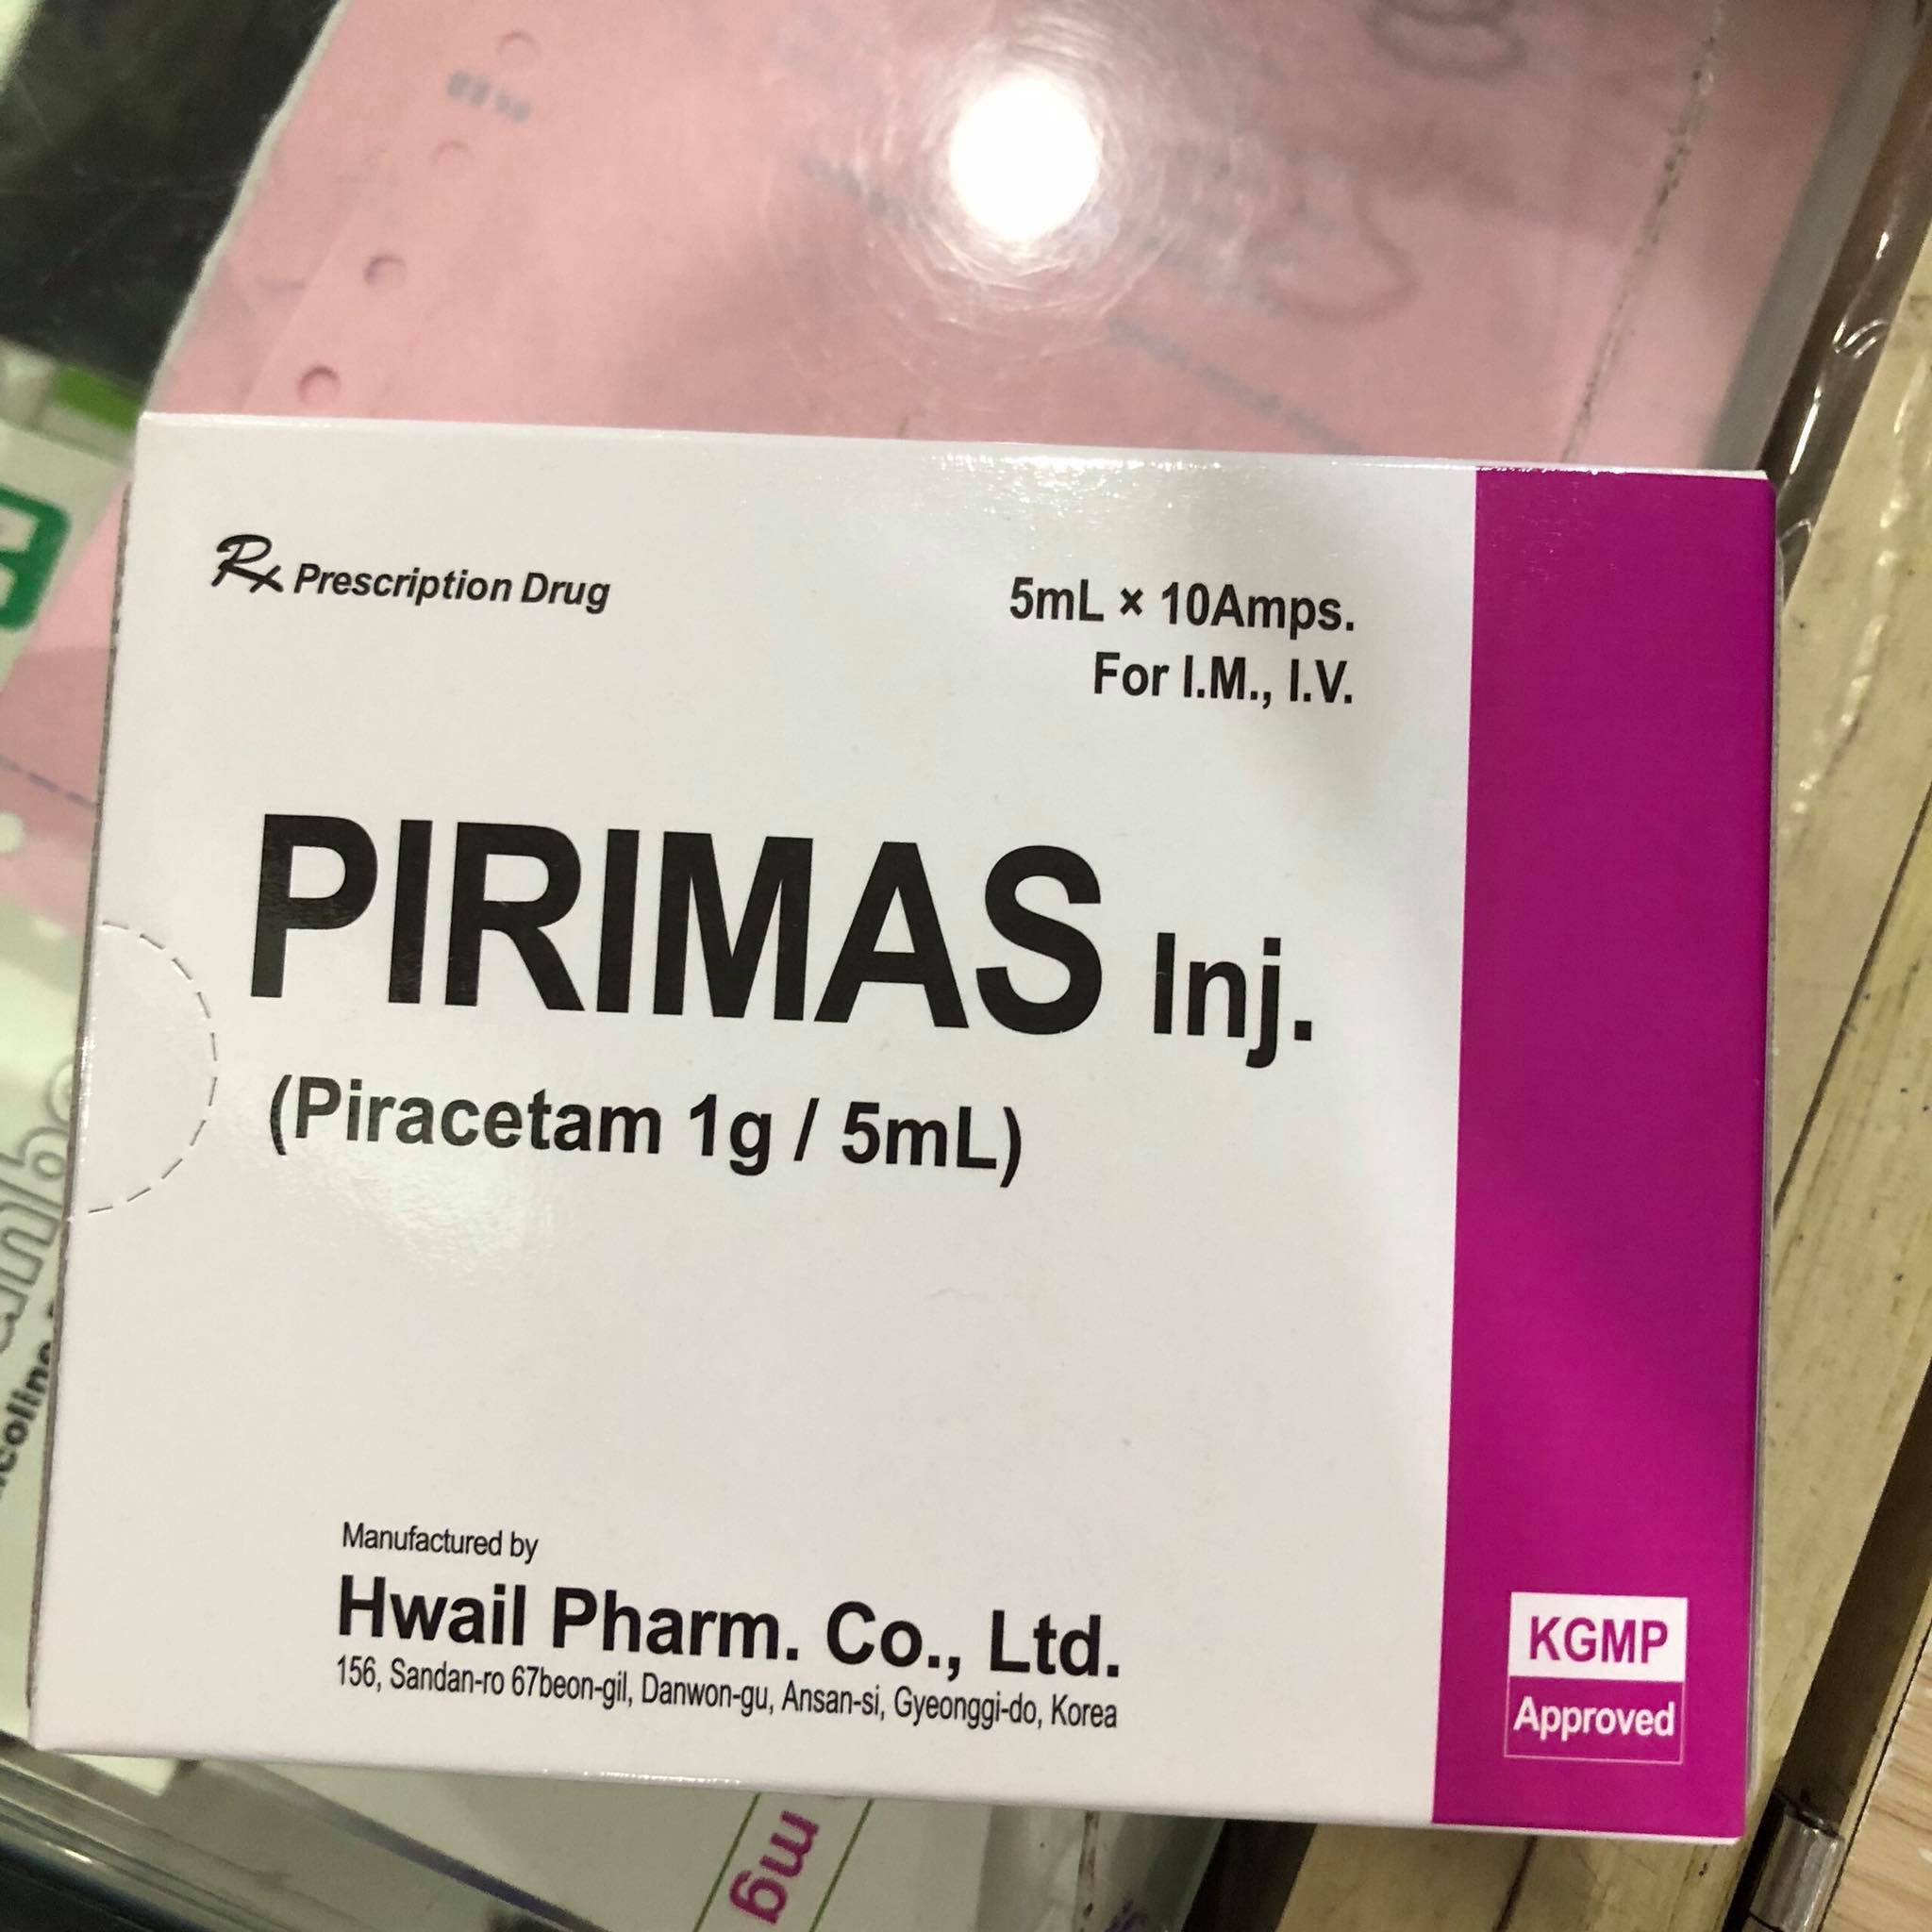 Pirimas 1g/5ml